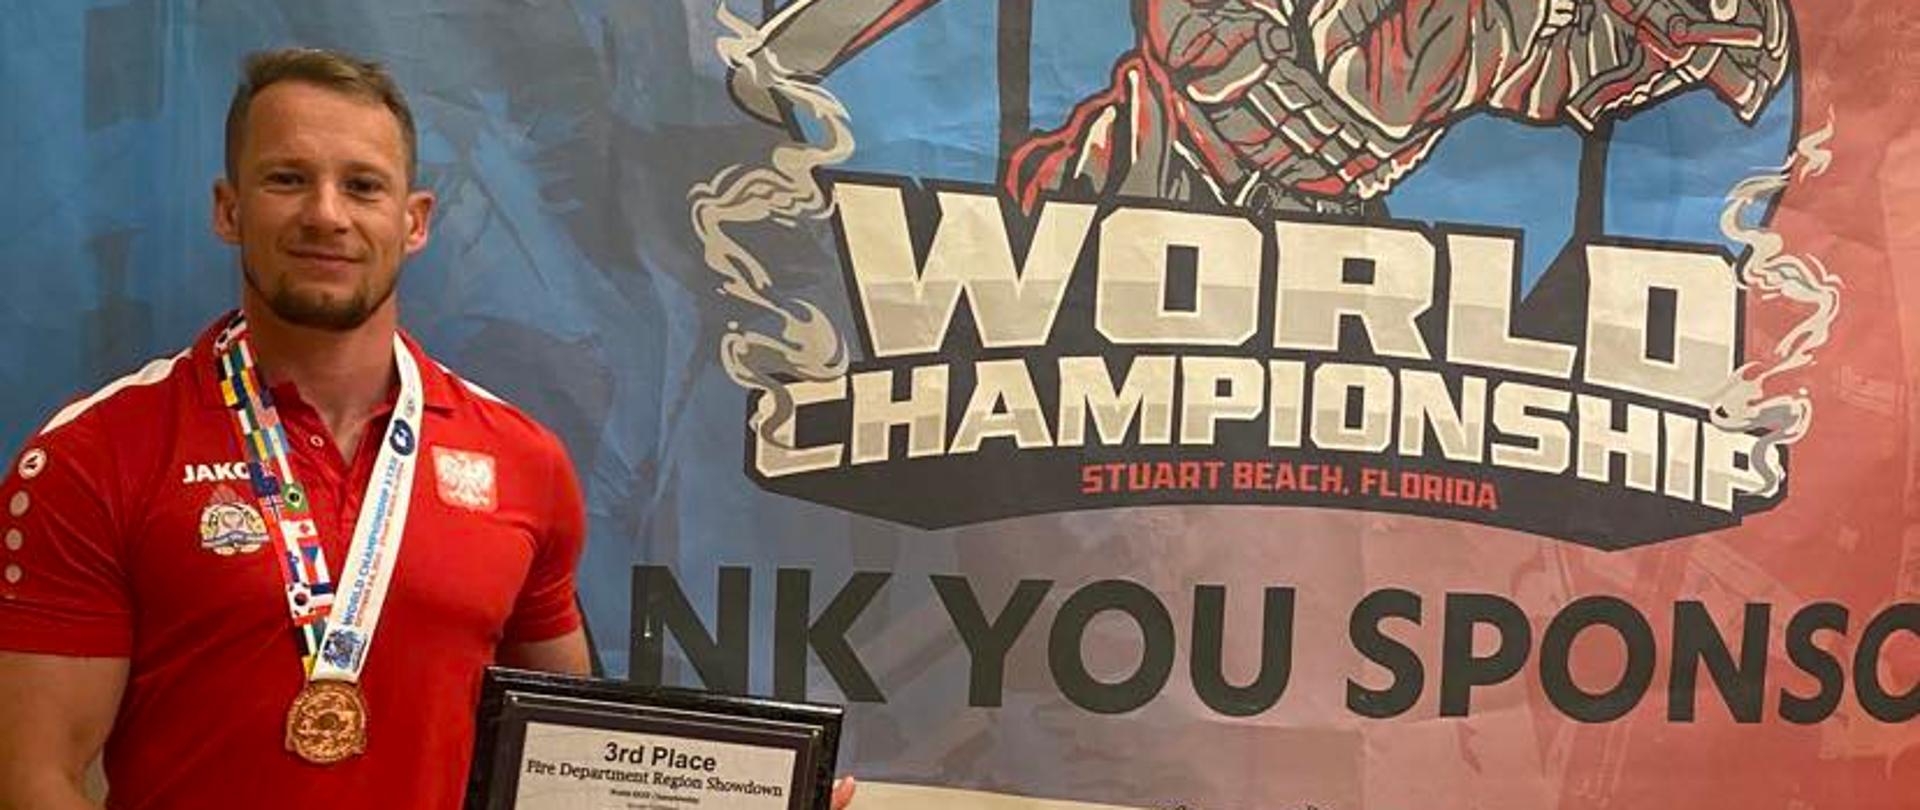 na kolorowym tle z napisami "world championship" z lewej strony stoi na czerwono ubrany mężczyzna, na szyi ma medal a w rekach na wysokości prawego biodra trzyma tablice z napisami.